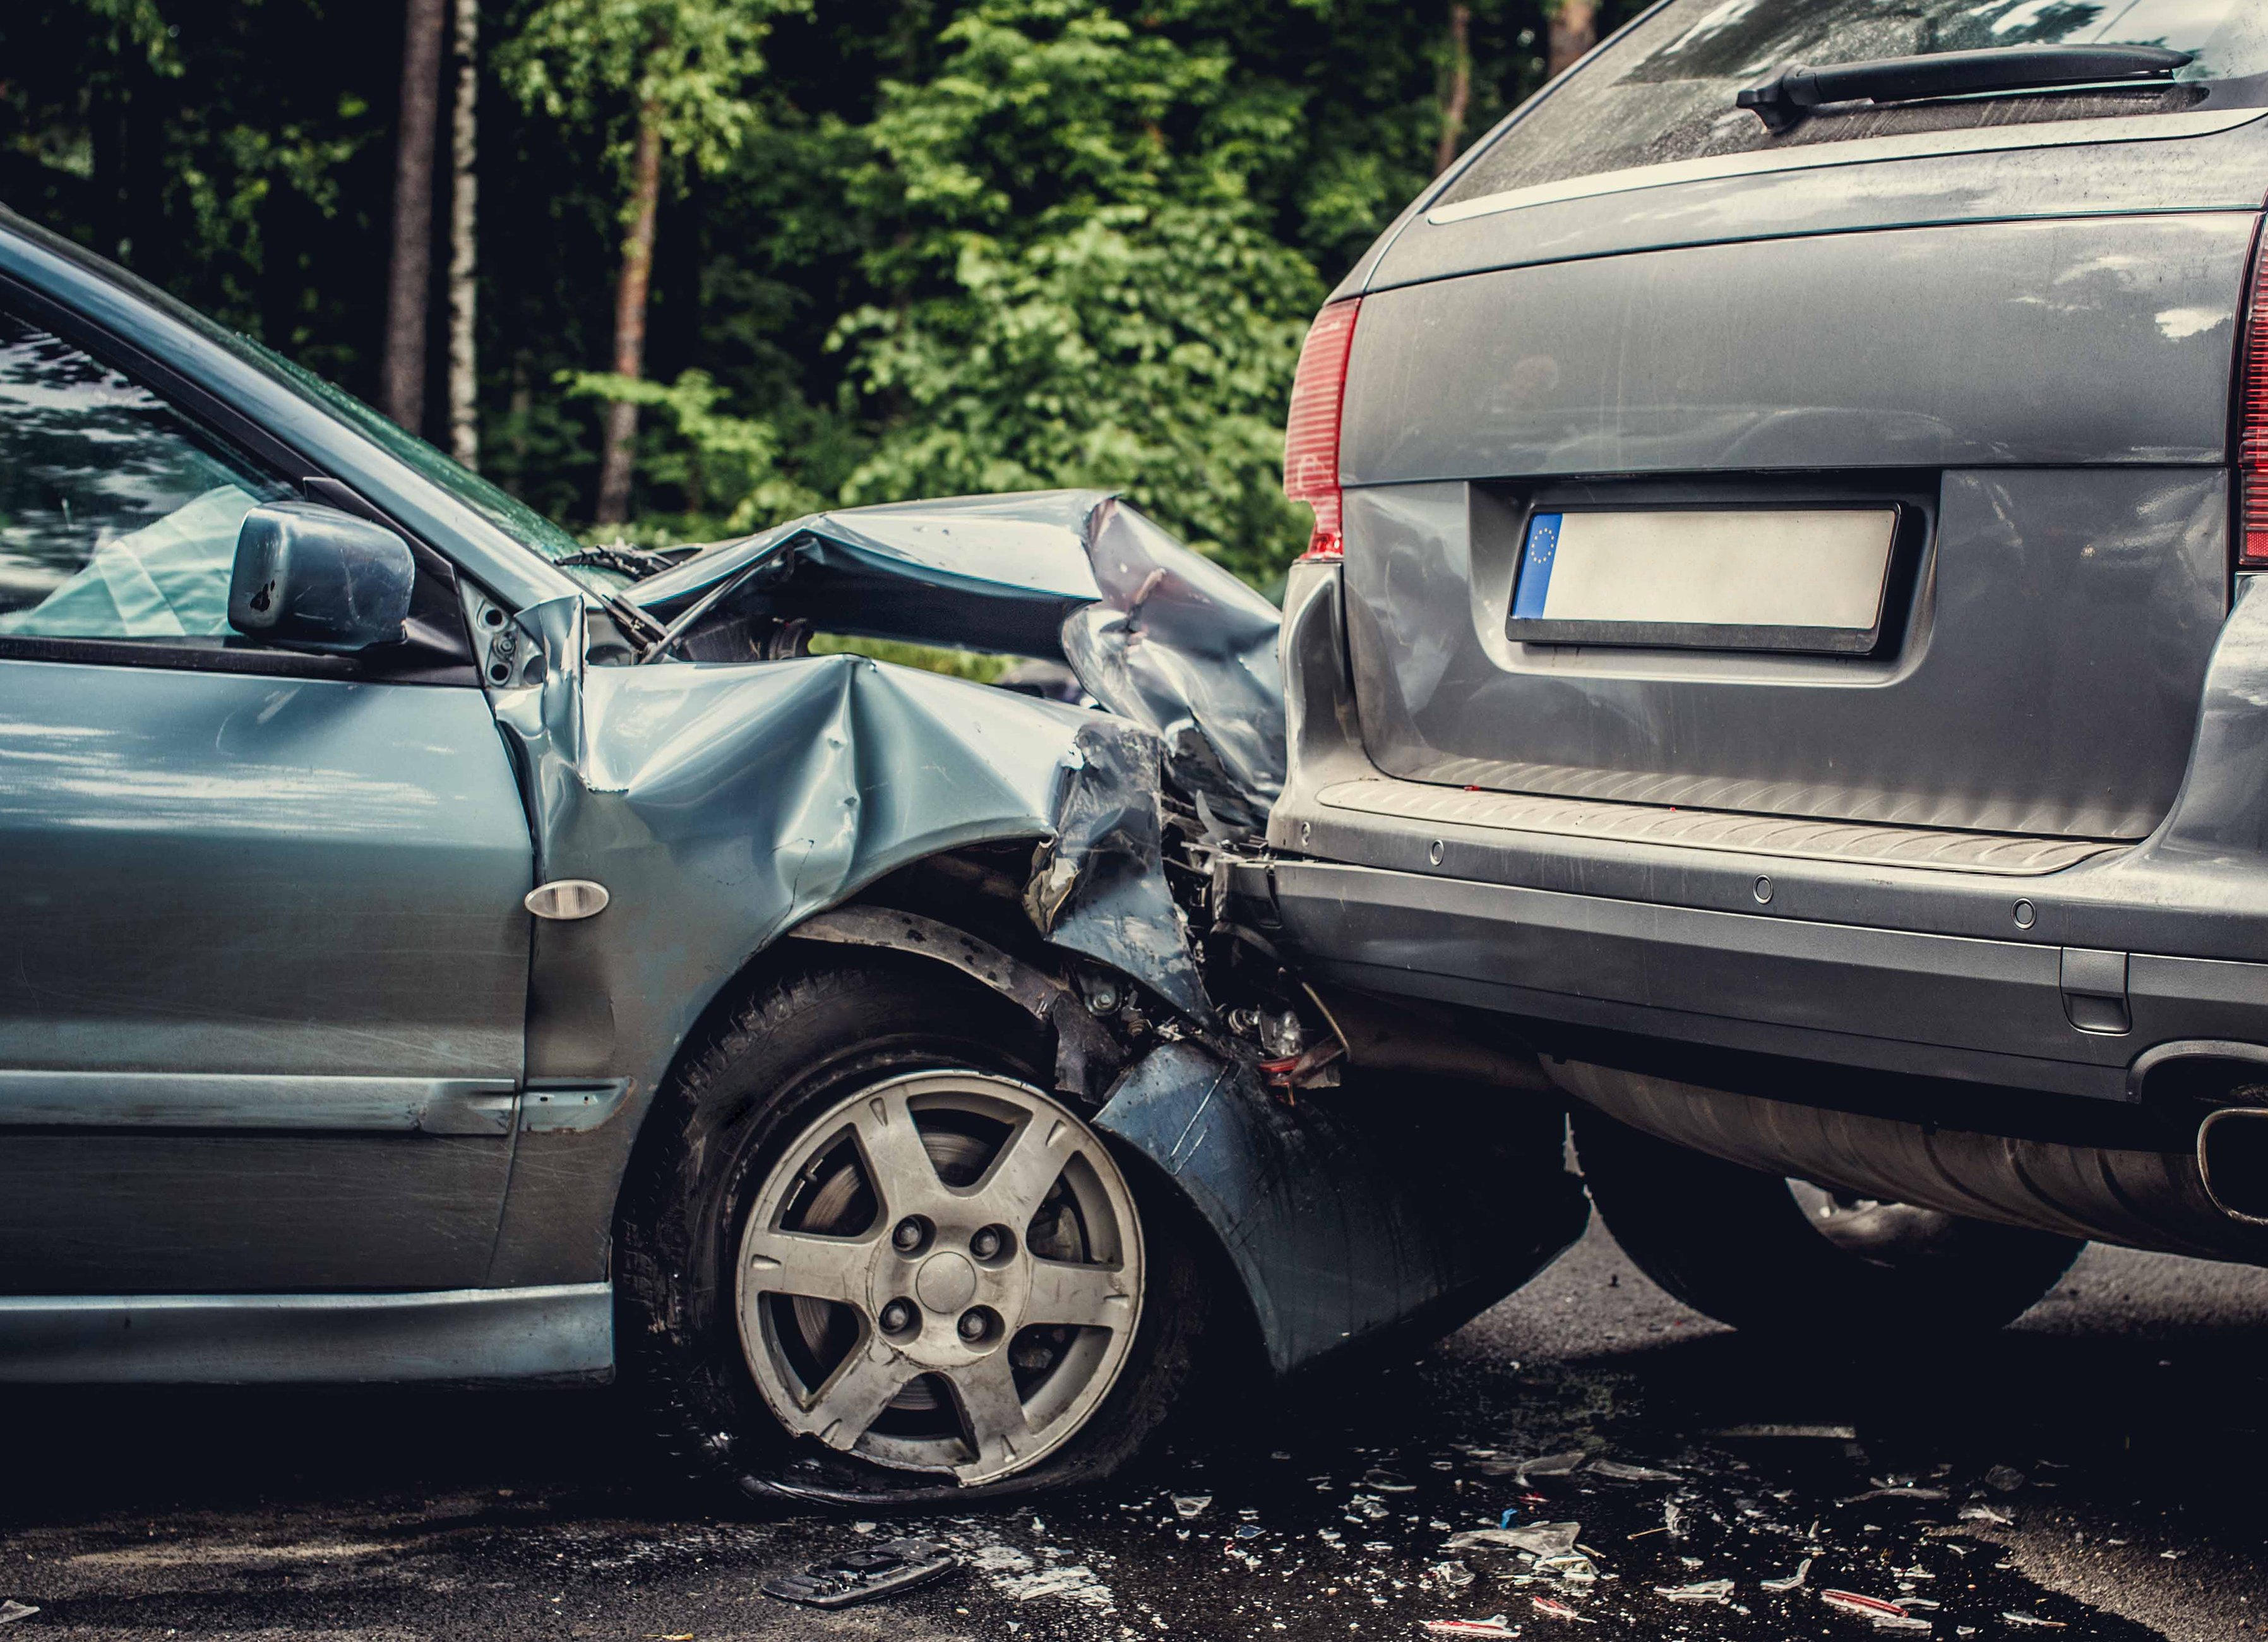 Para os segurados, é importante conhecer os fatores que as seguradoras levam em consideração quando ocorrem danos ao veículo